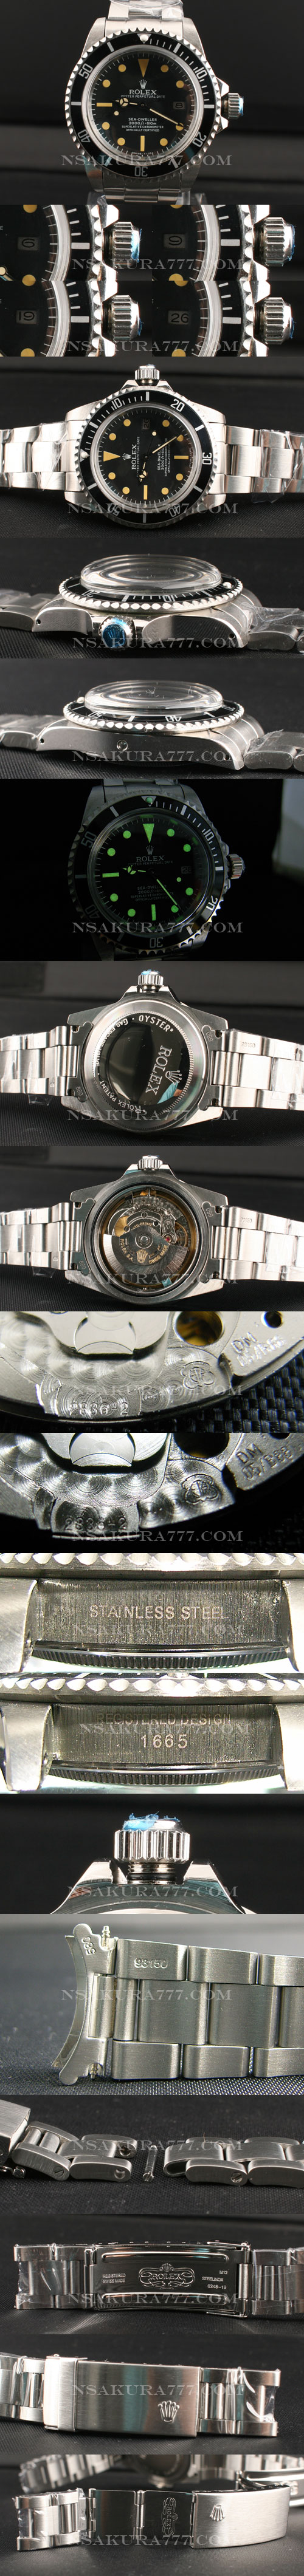 レプリカ時計ロレックス 1665シードウェラー初期モデル最新改良白2836-2搭載 - ウインドウを閉じる